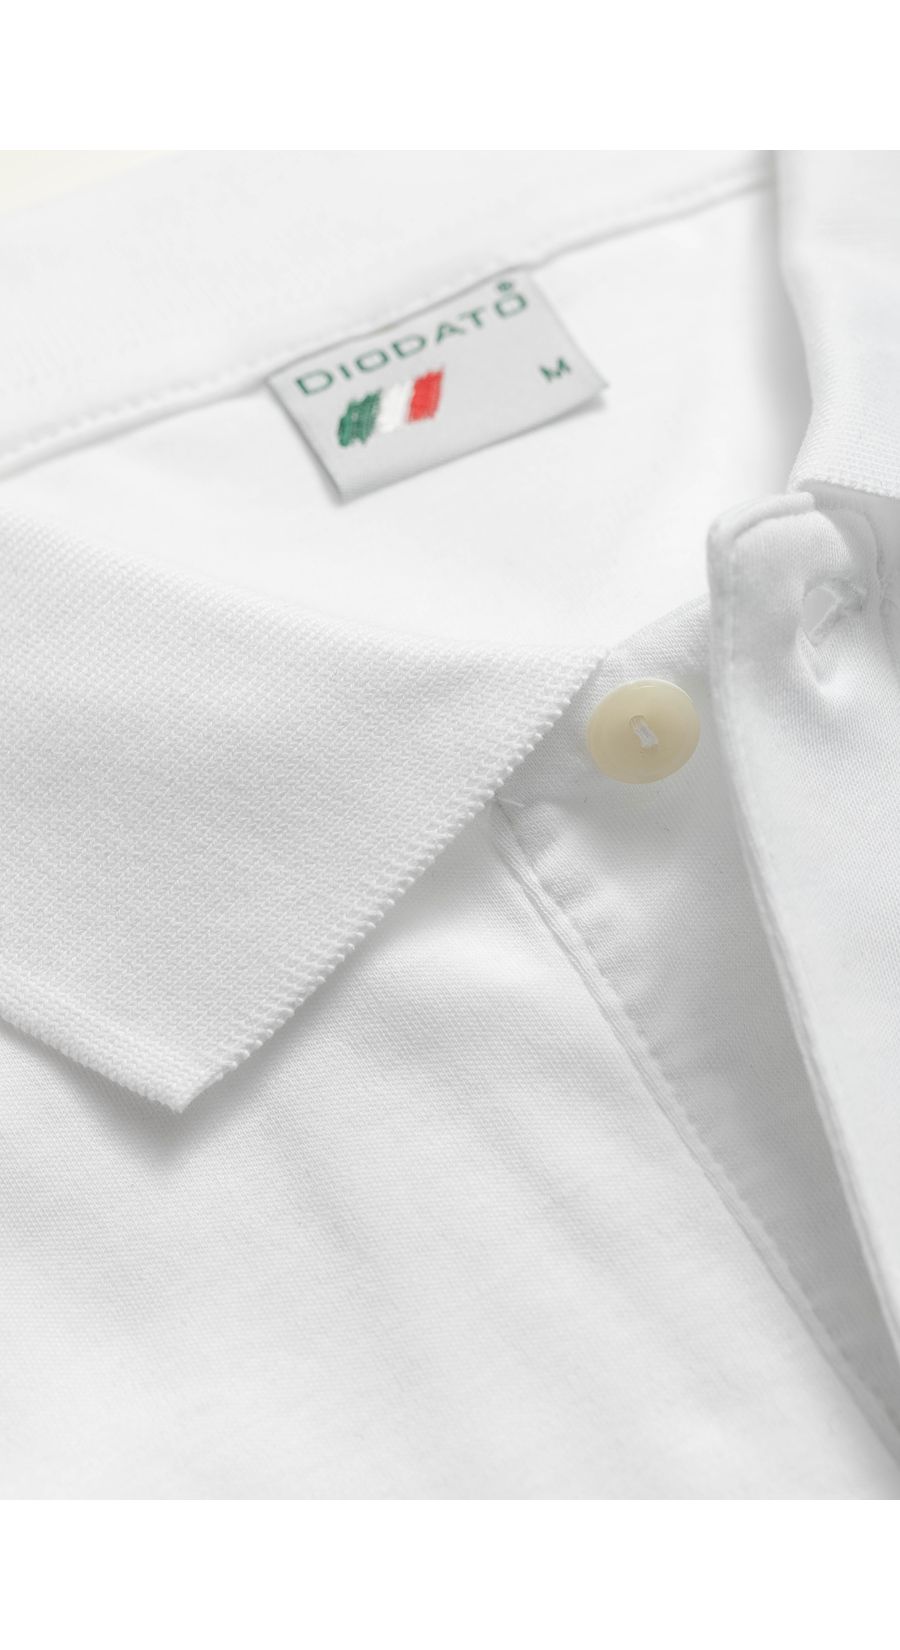 Camisa Polo Peruano branco - Diodato Alfaiataria